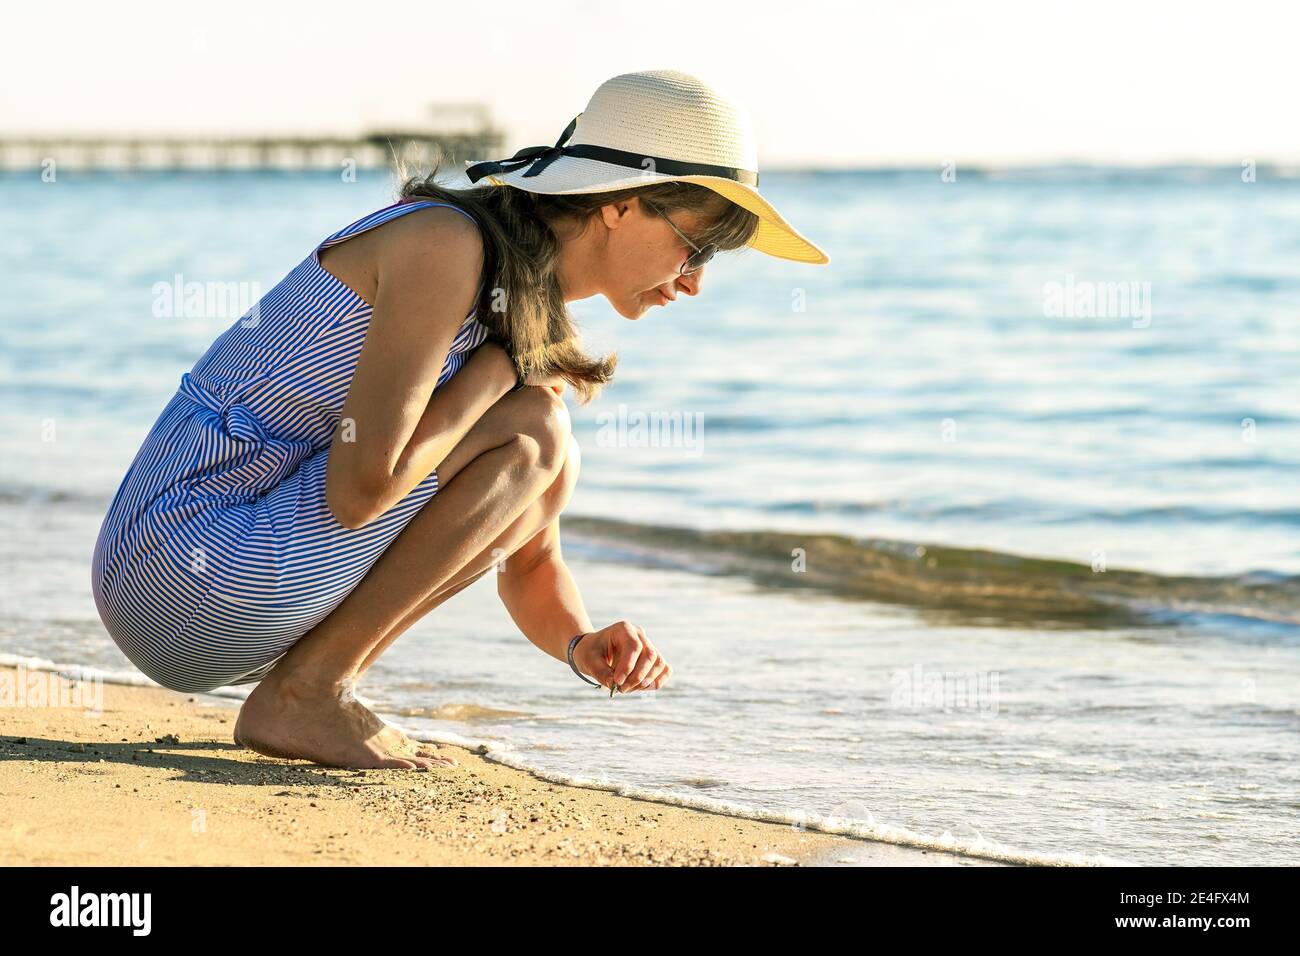 Mujer joven en ropa de verano escribiendo algo la arena de la playa de mar Fotografía de stock - Alamy